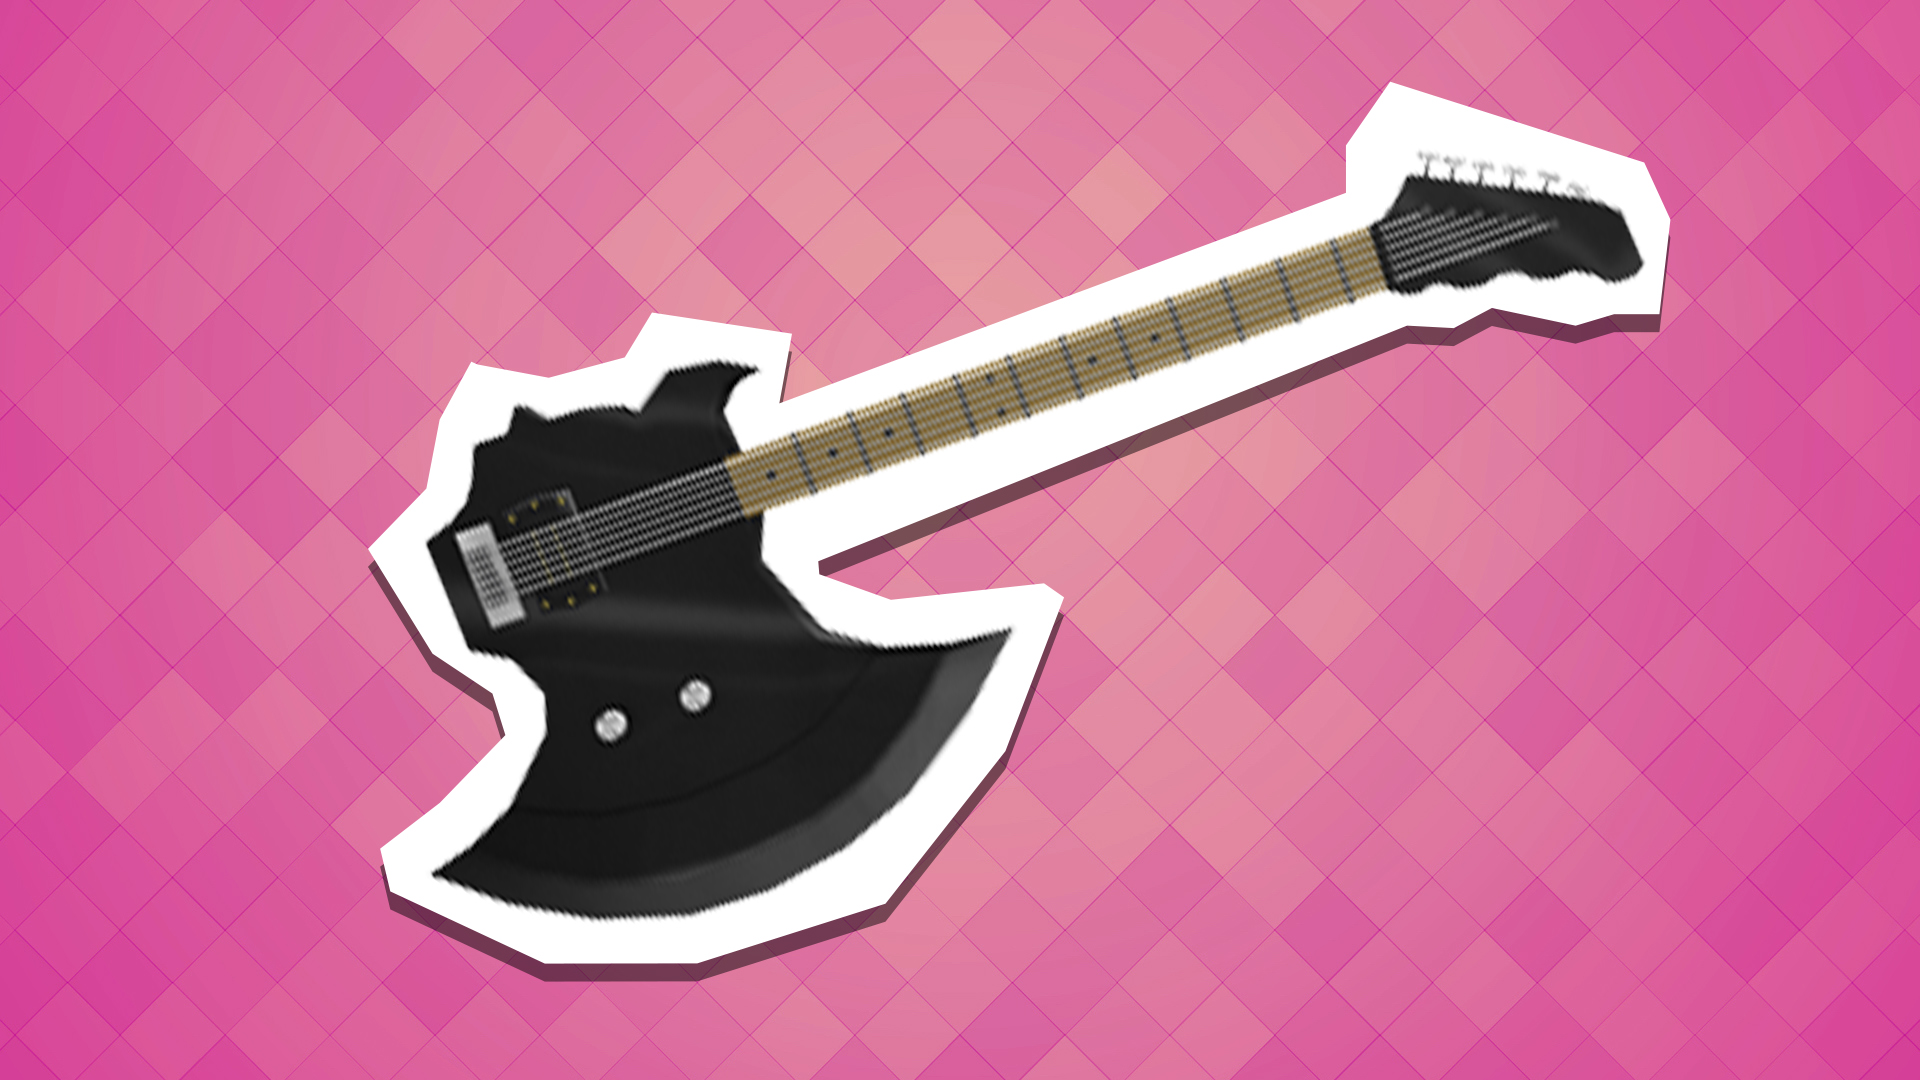 An axe-shaped guitar